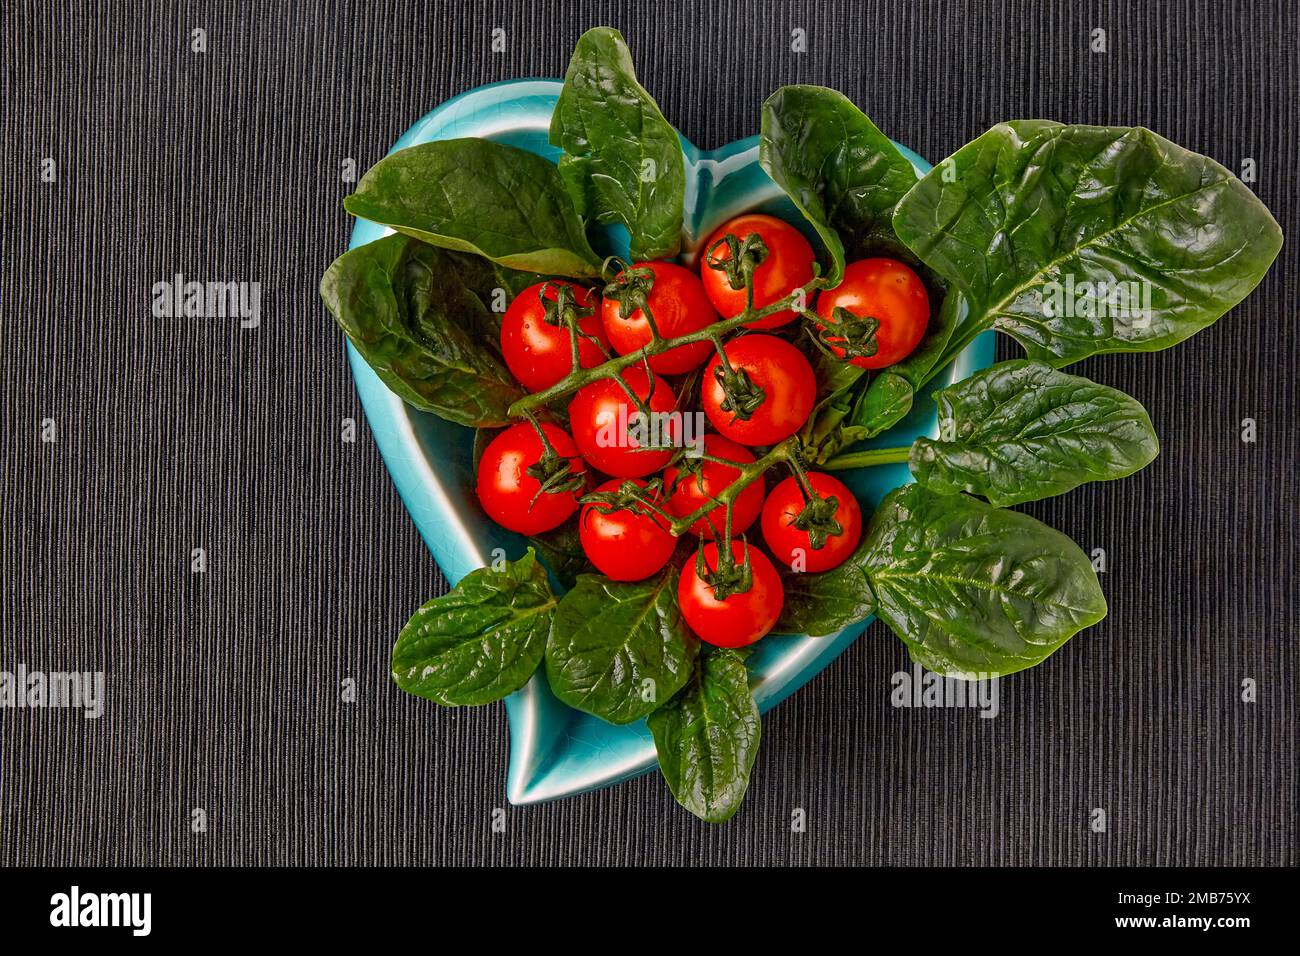 Pomodori ciliegini rossi su un ramo e foglie di spinaci verdi in una ciotola blu a forma di cuore un cuore su una tovaglia tessile nera Foto Stock